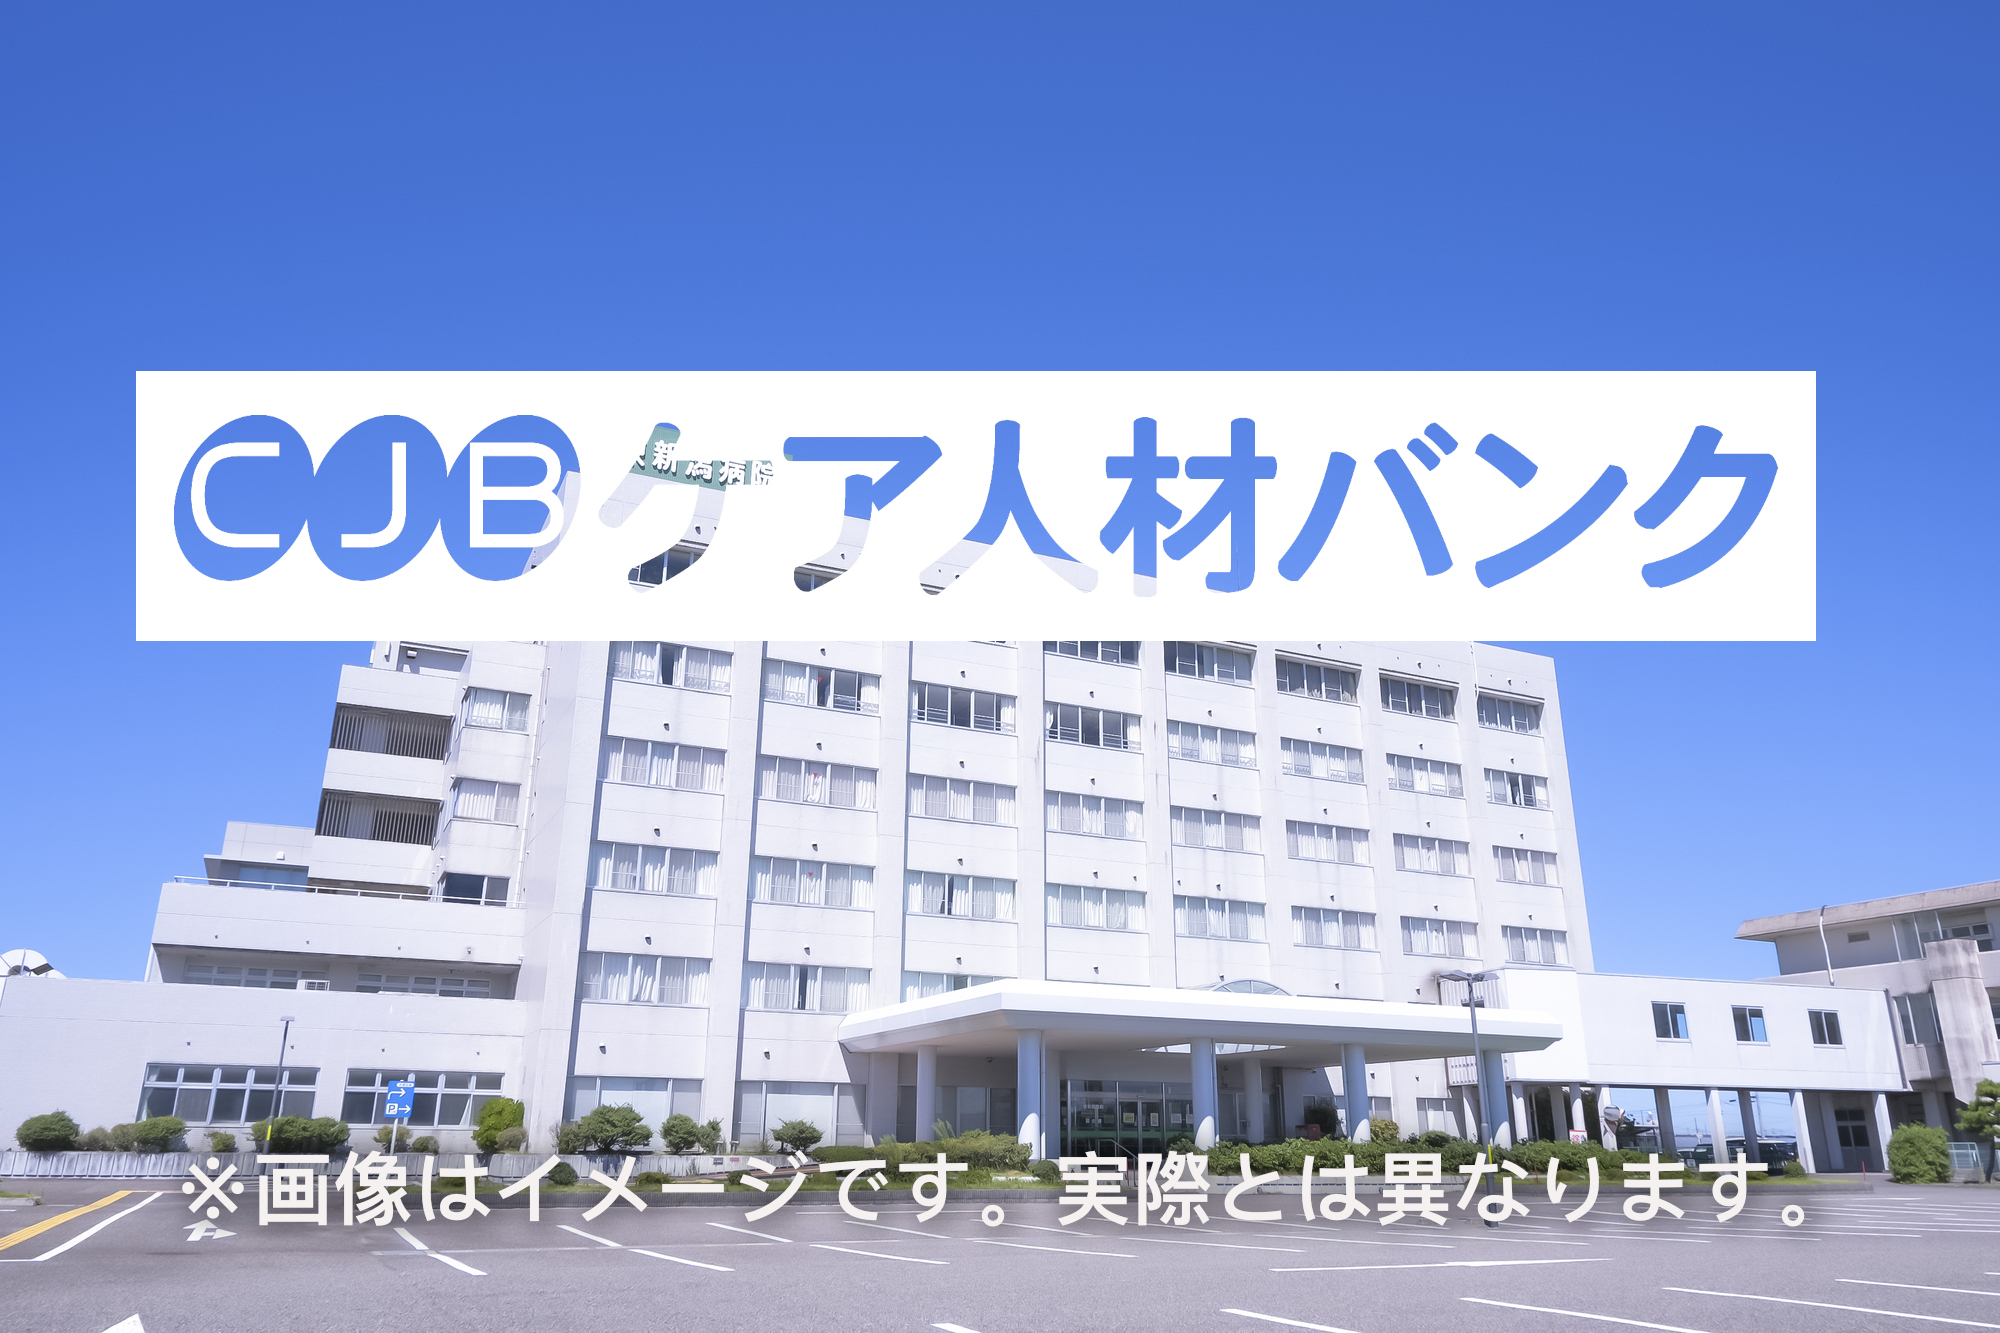 琵琶湖中央リハビリテーション病院 のイメージ画像